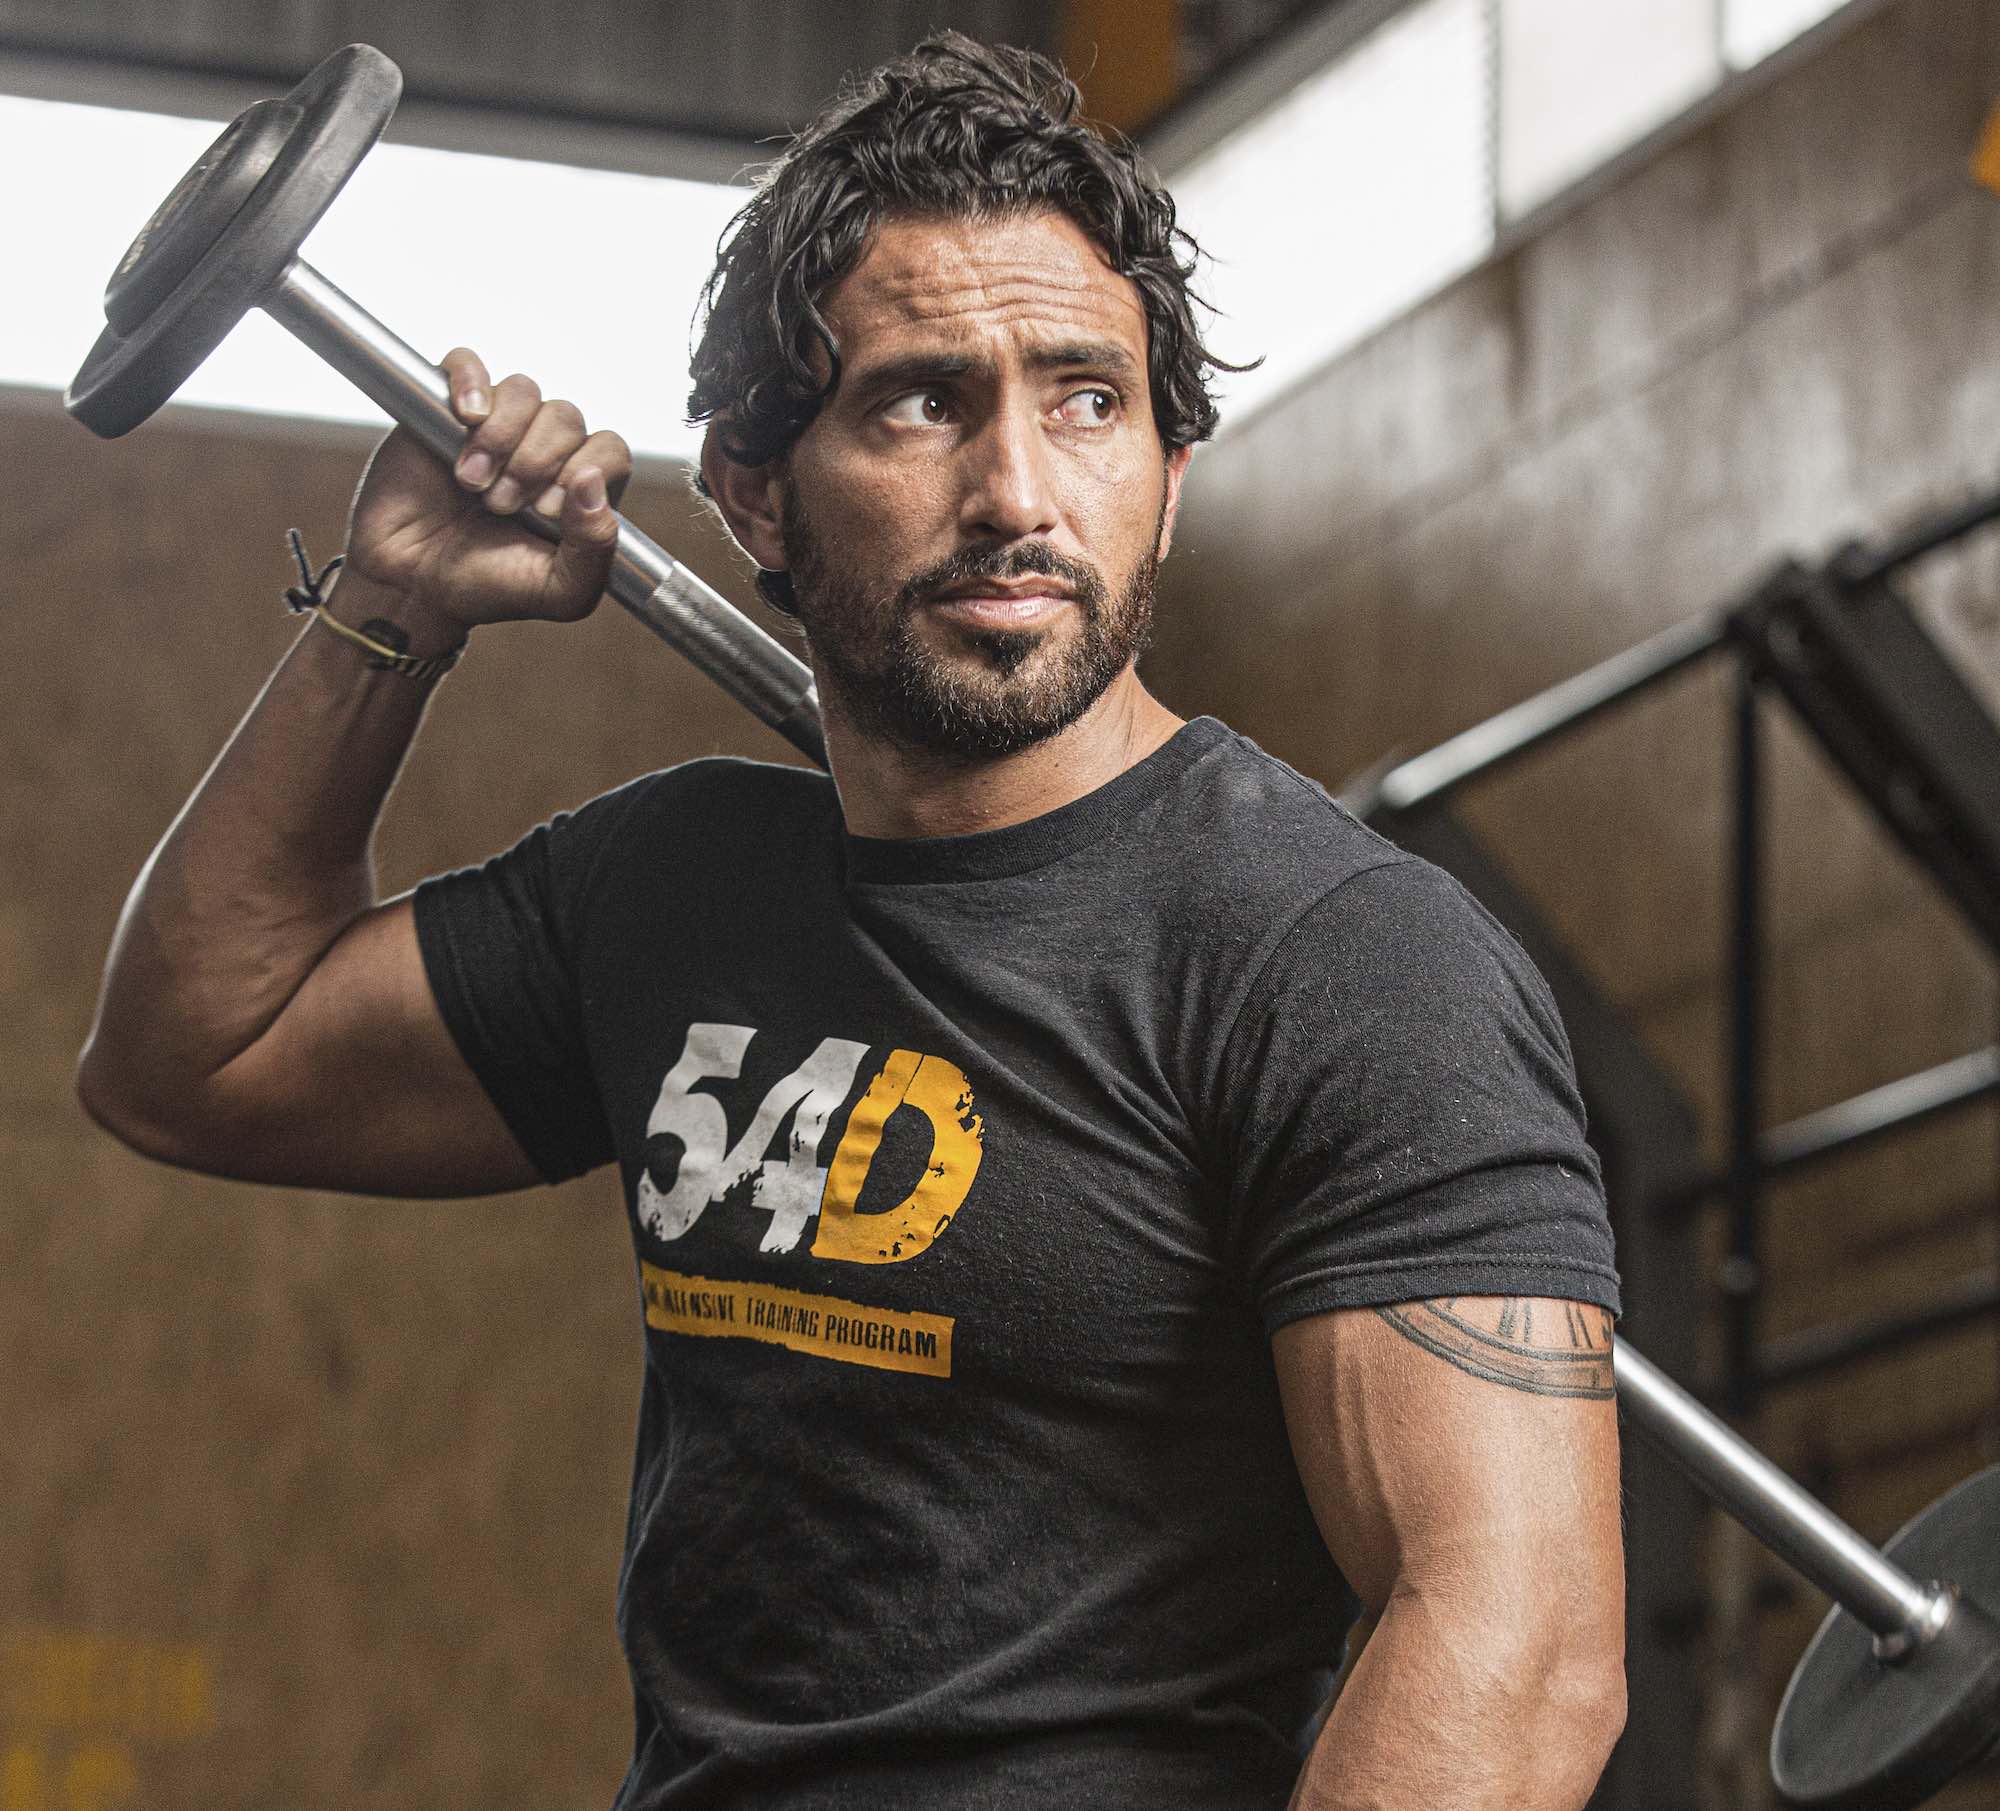 54D: El innovador programa de entrenamiento físico creado por un exfutbolista que cambia vidas y cuerpos 